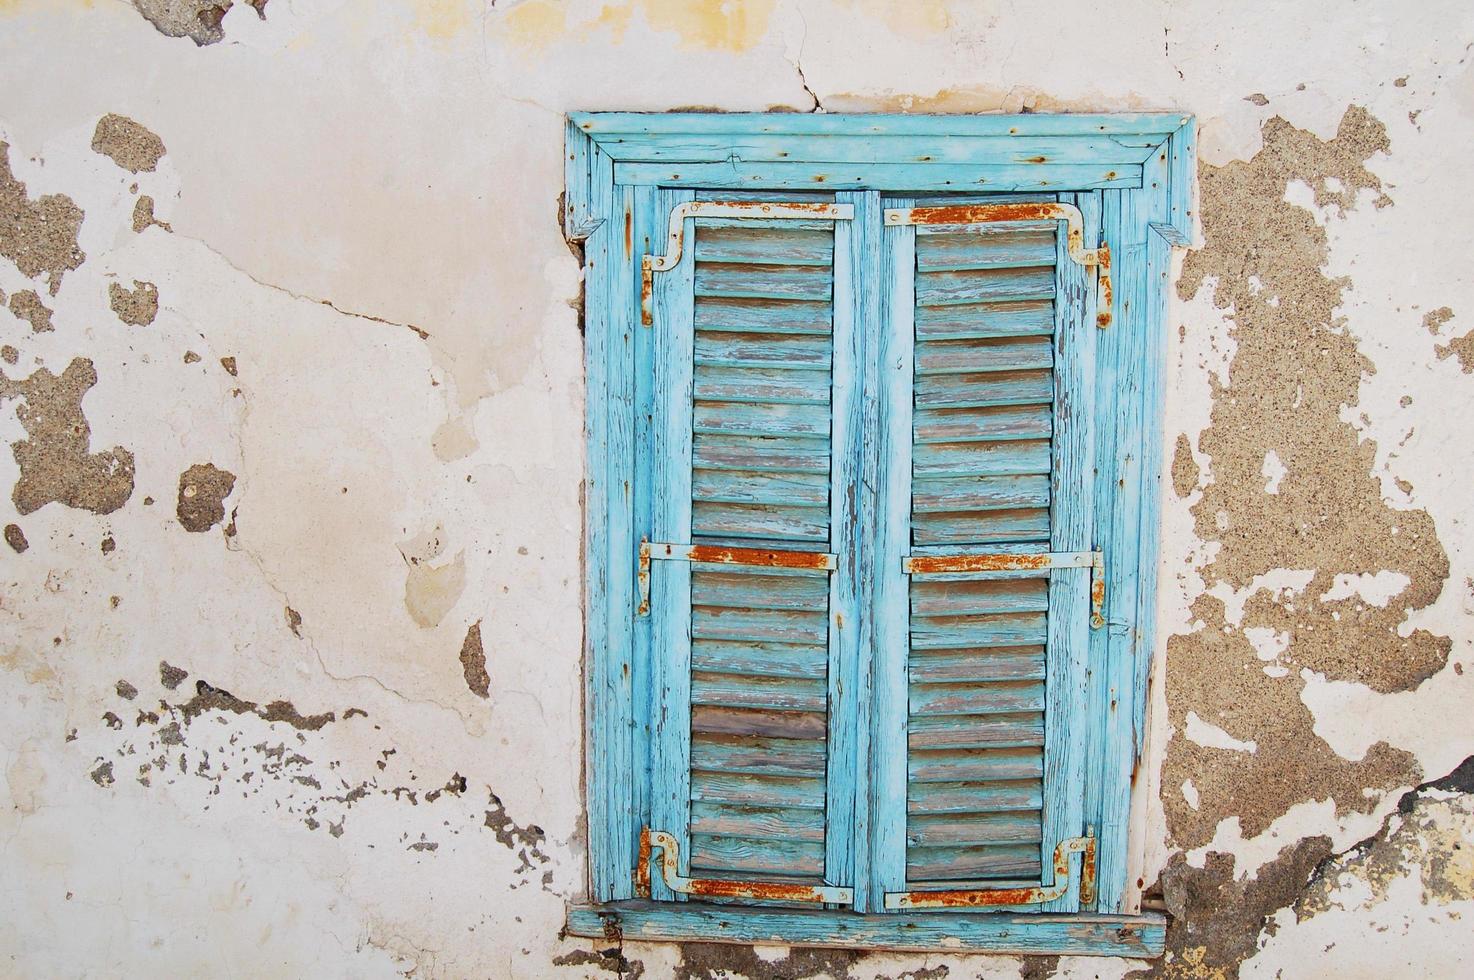 Fenêtre à persiennes en bois bleu dans un mur avec de la peinture grise écaillée photo